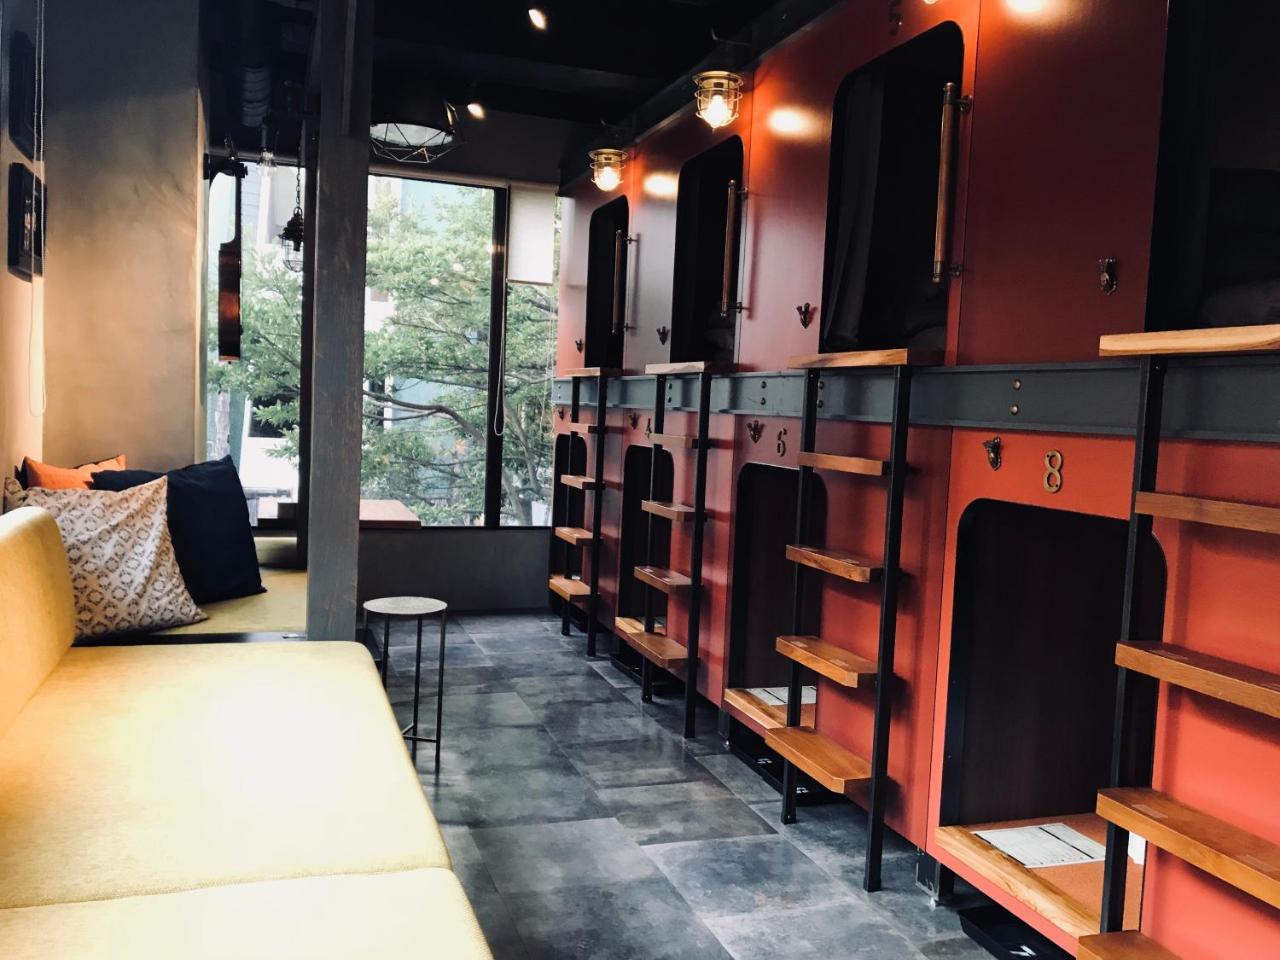 Hare-Tabi Sauna&Inn Yokohama Yokohama  Dış mekan fotoğraf